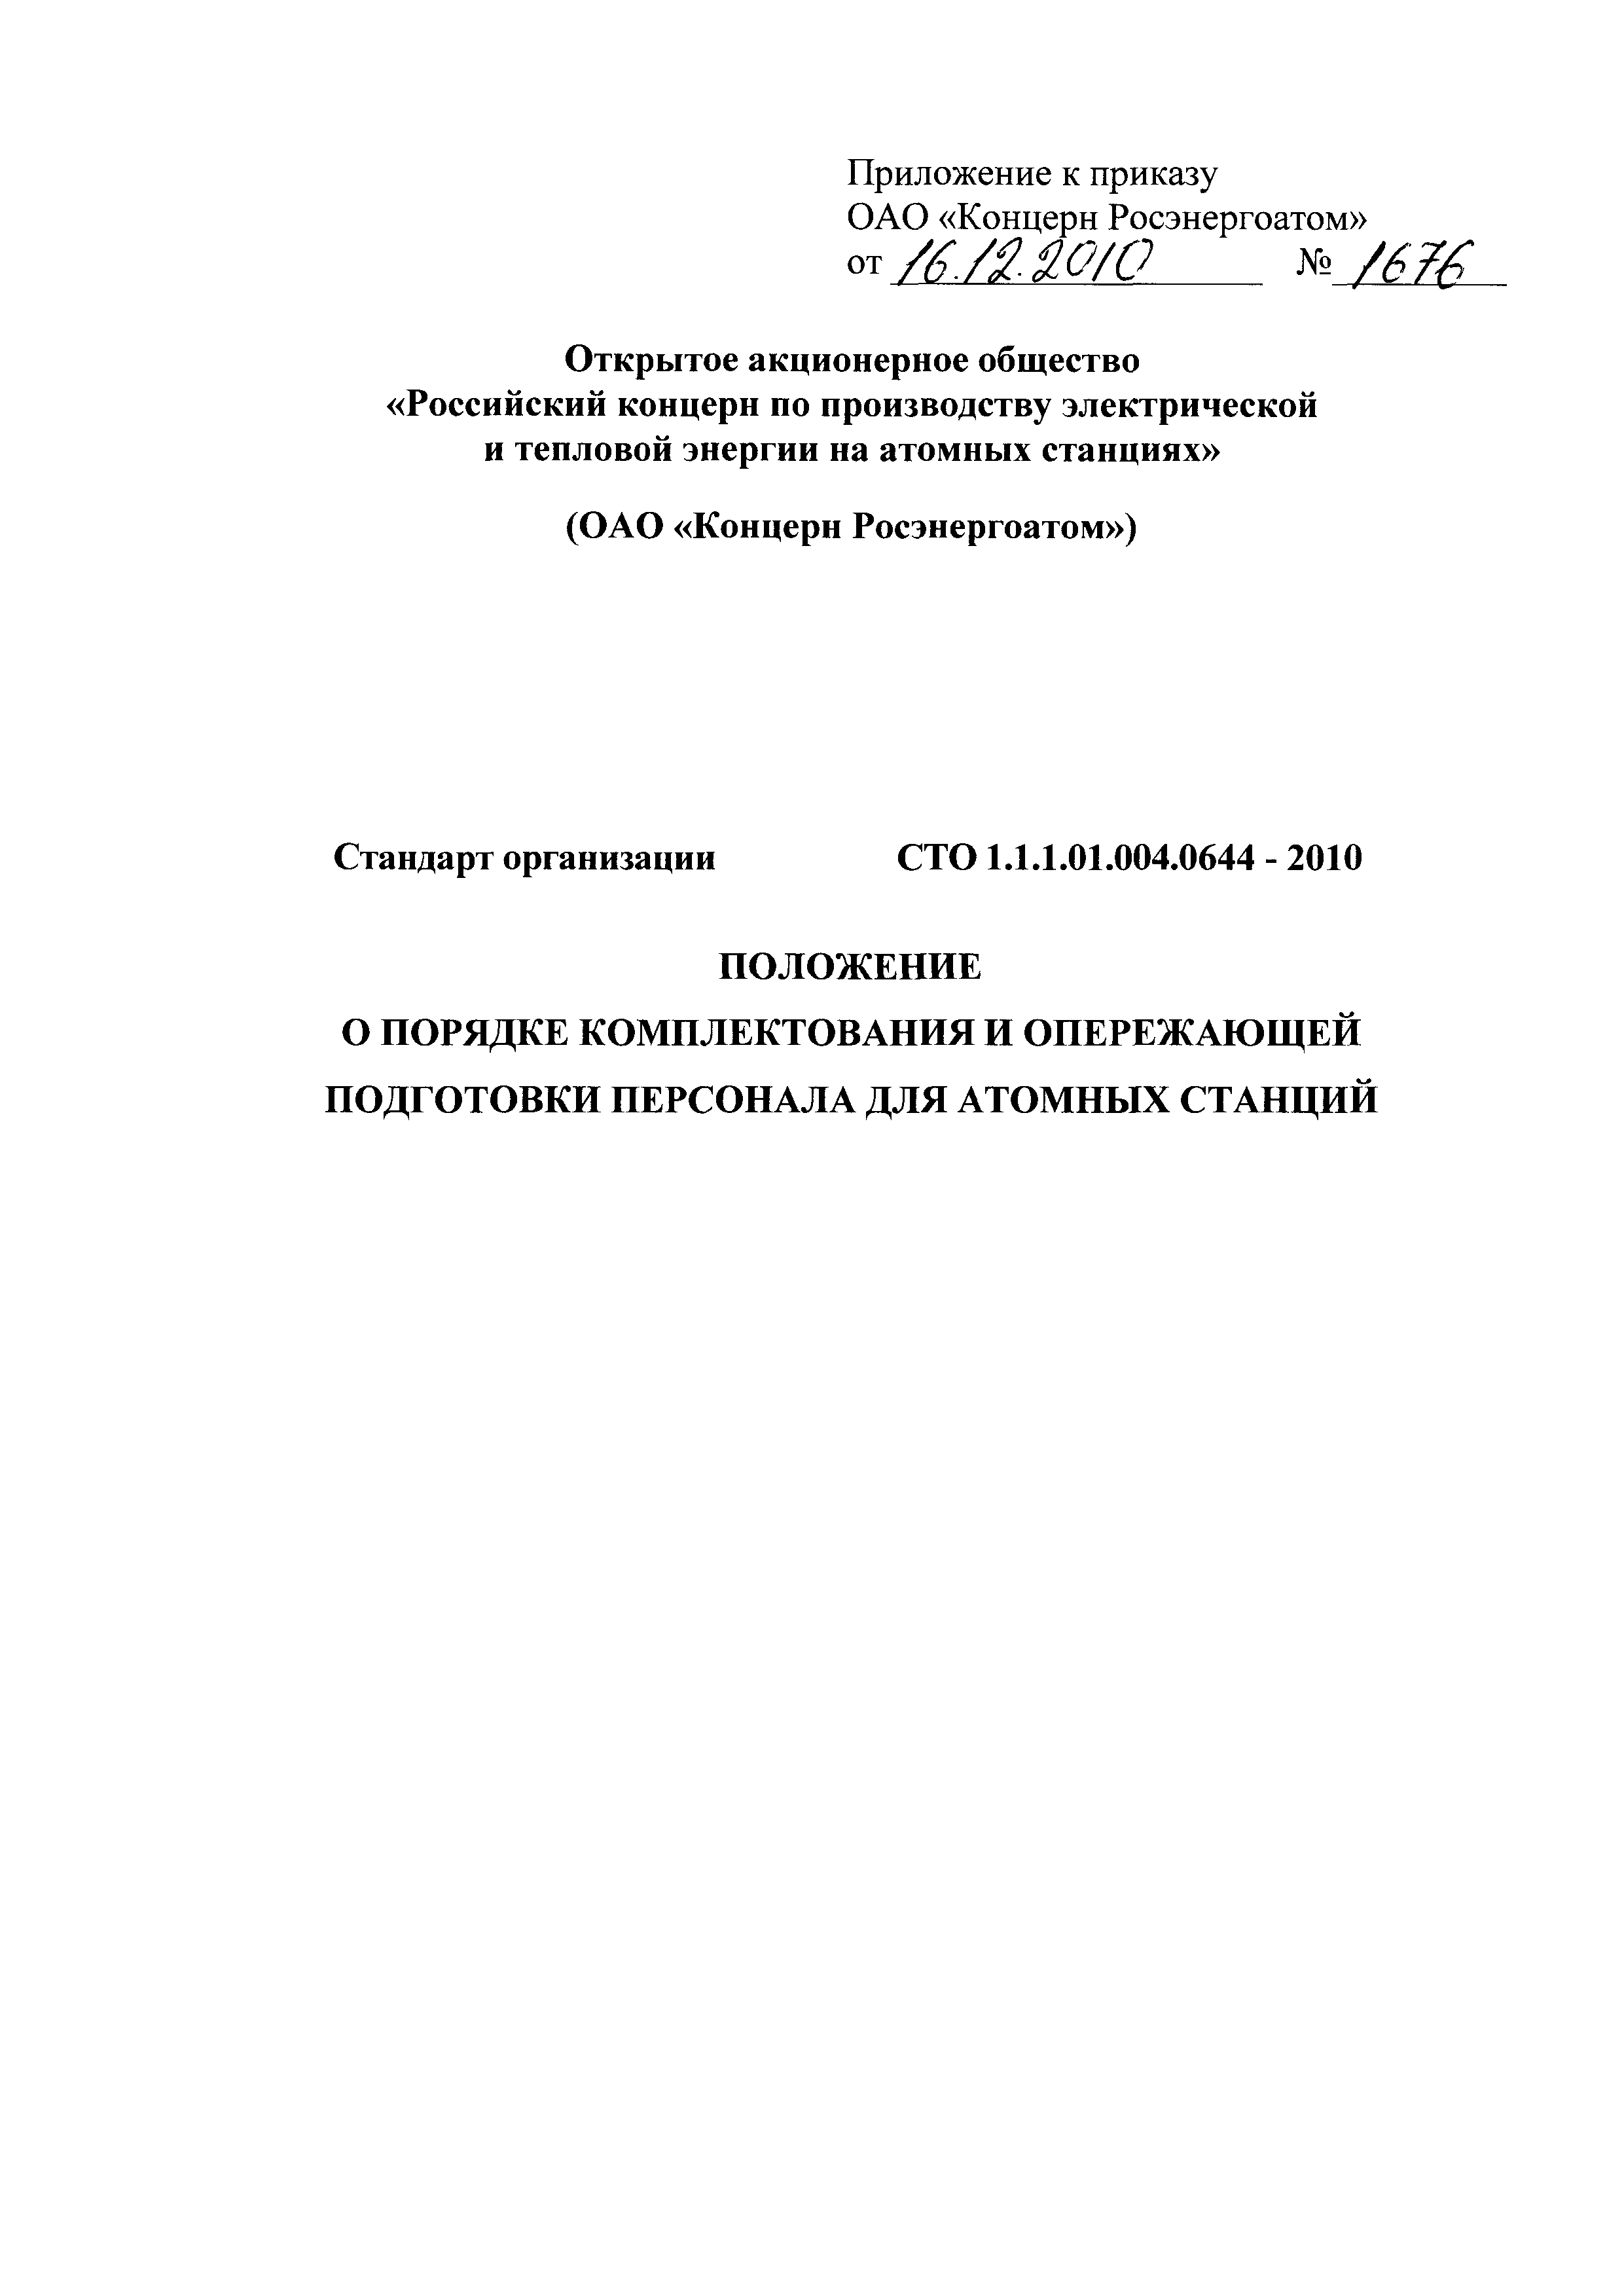 СТО 1.1.1.01.004.0644-2010